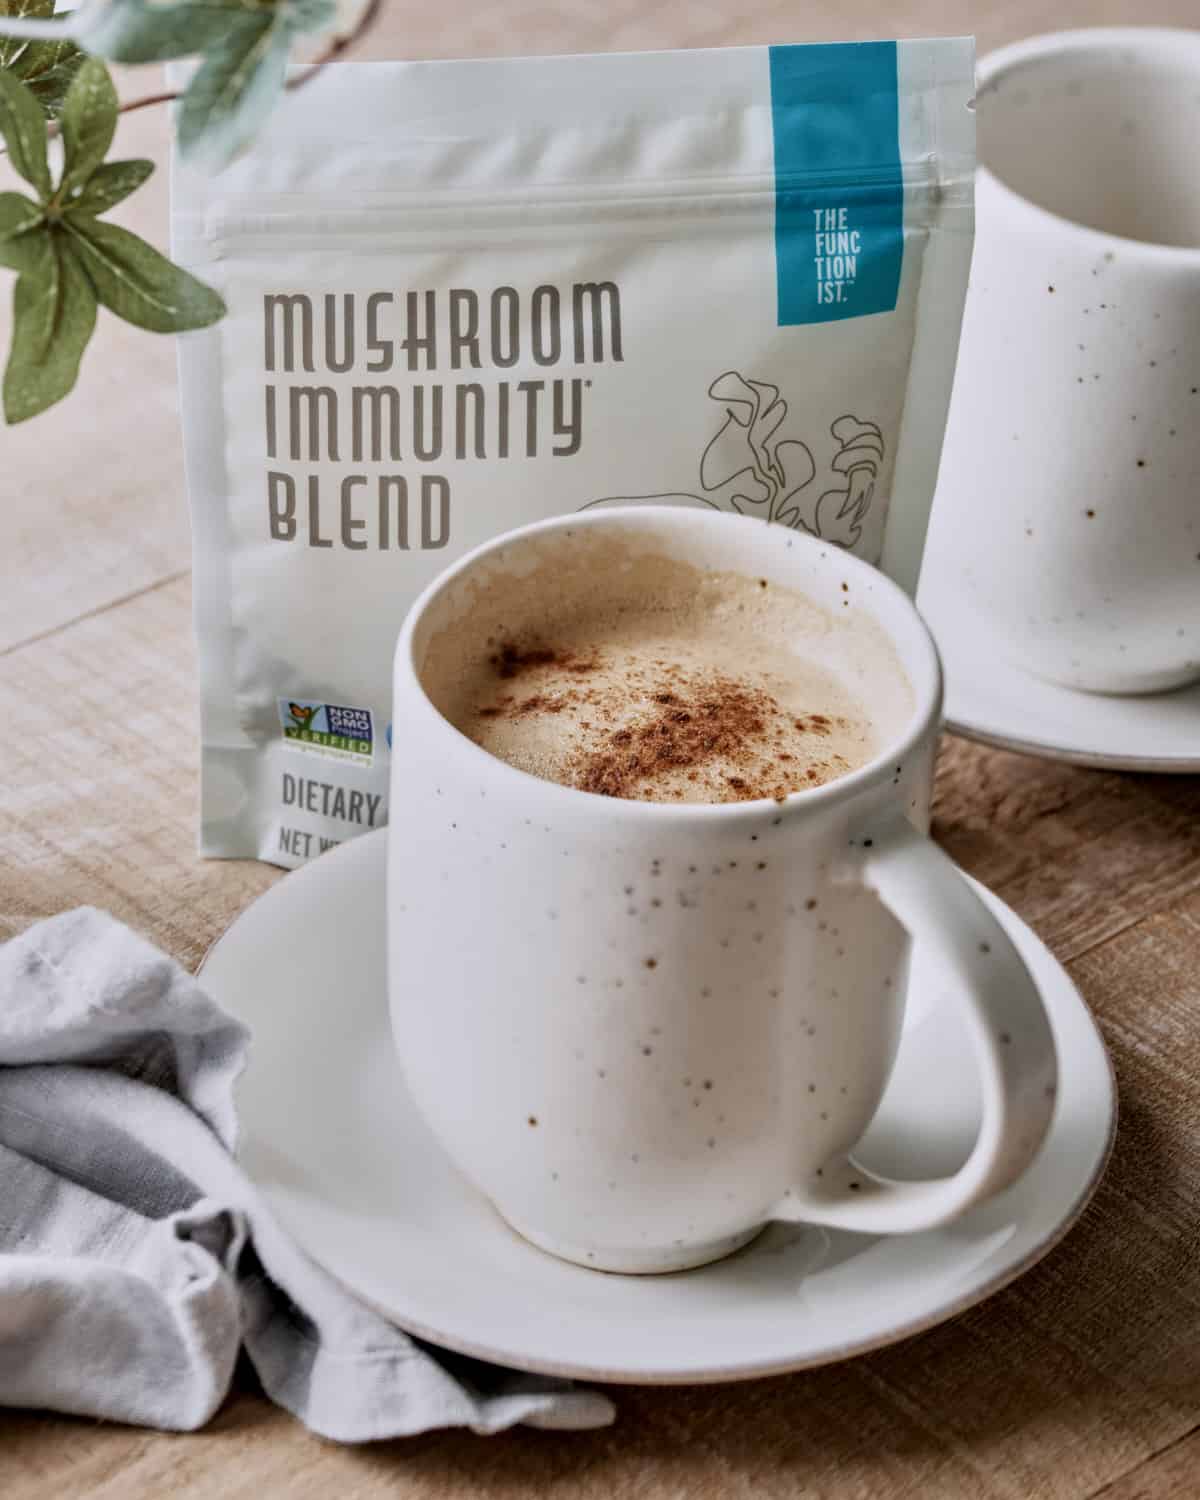 Side view of vegan mushroom latte in cup with mushroom immunity blend.